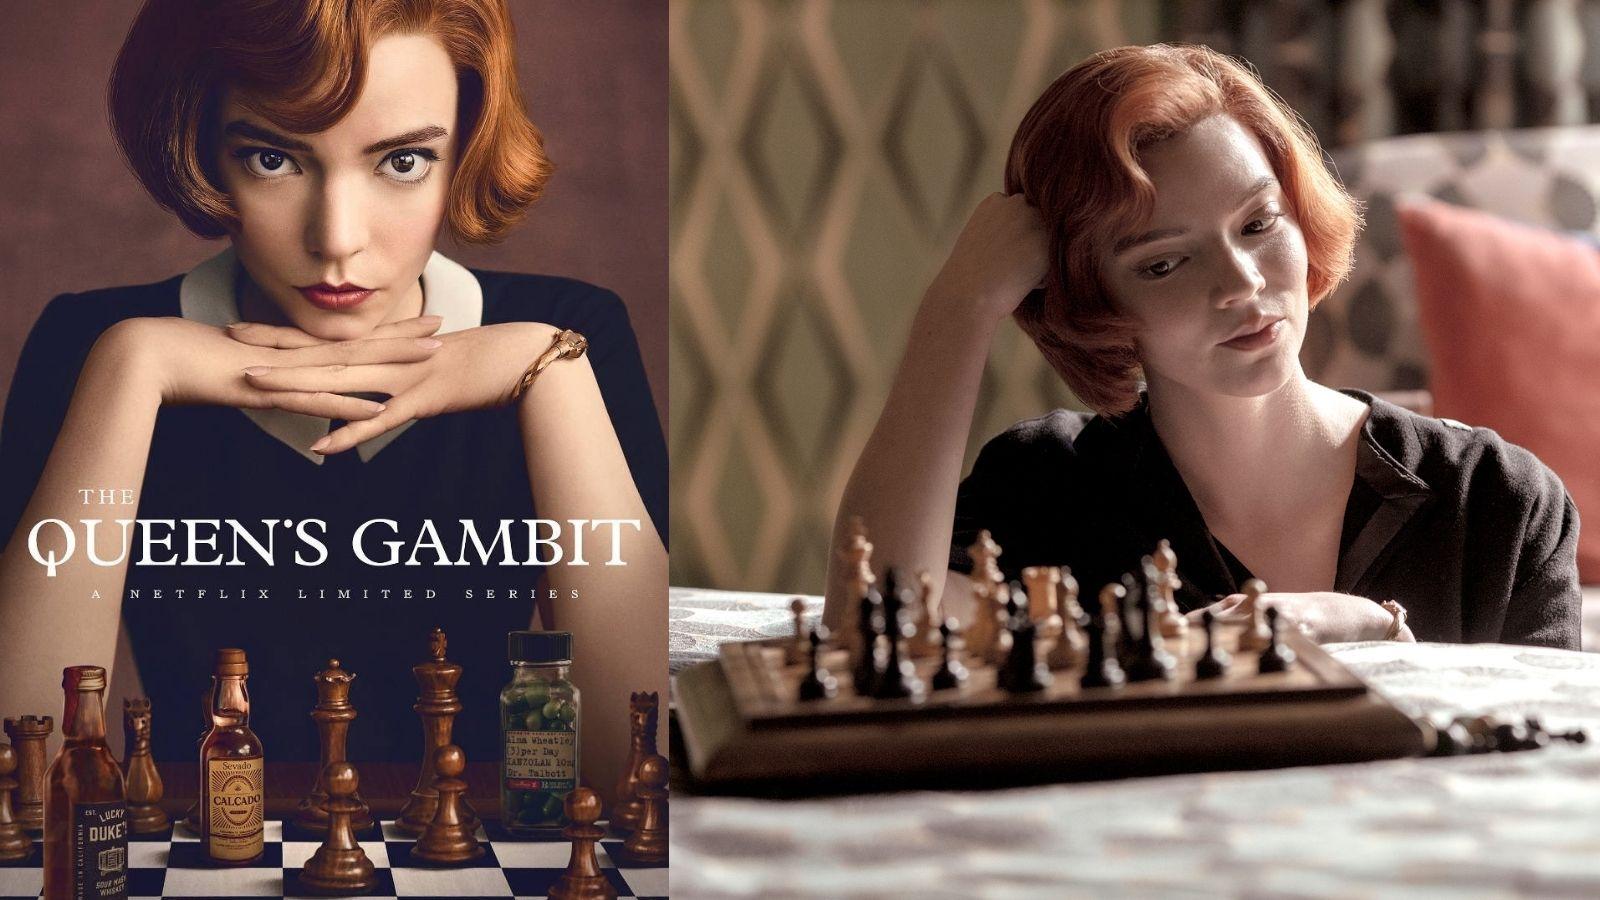 The Queen's Gambit Wallpaper  Queen's gambit aesthetic, Queen's gambit  wallpaper, The queen's gambit